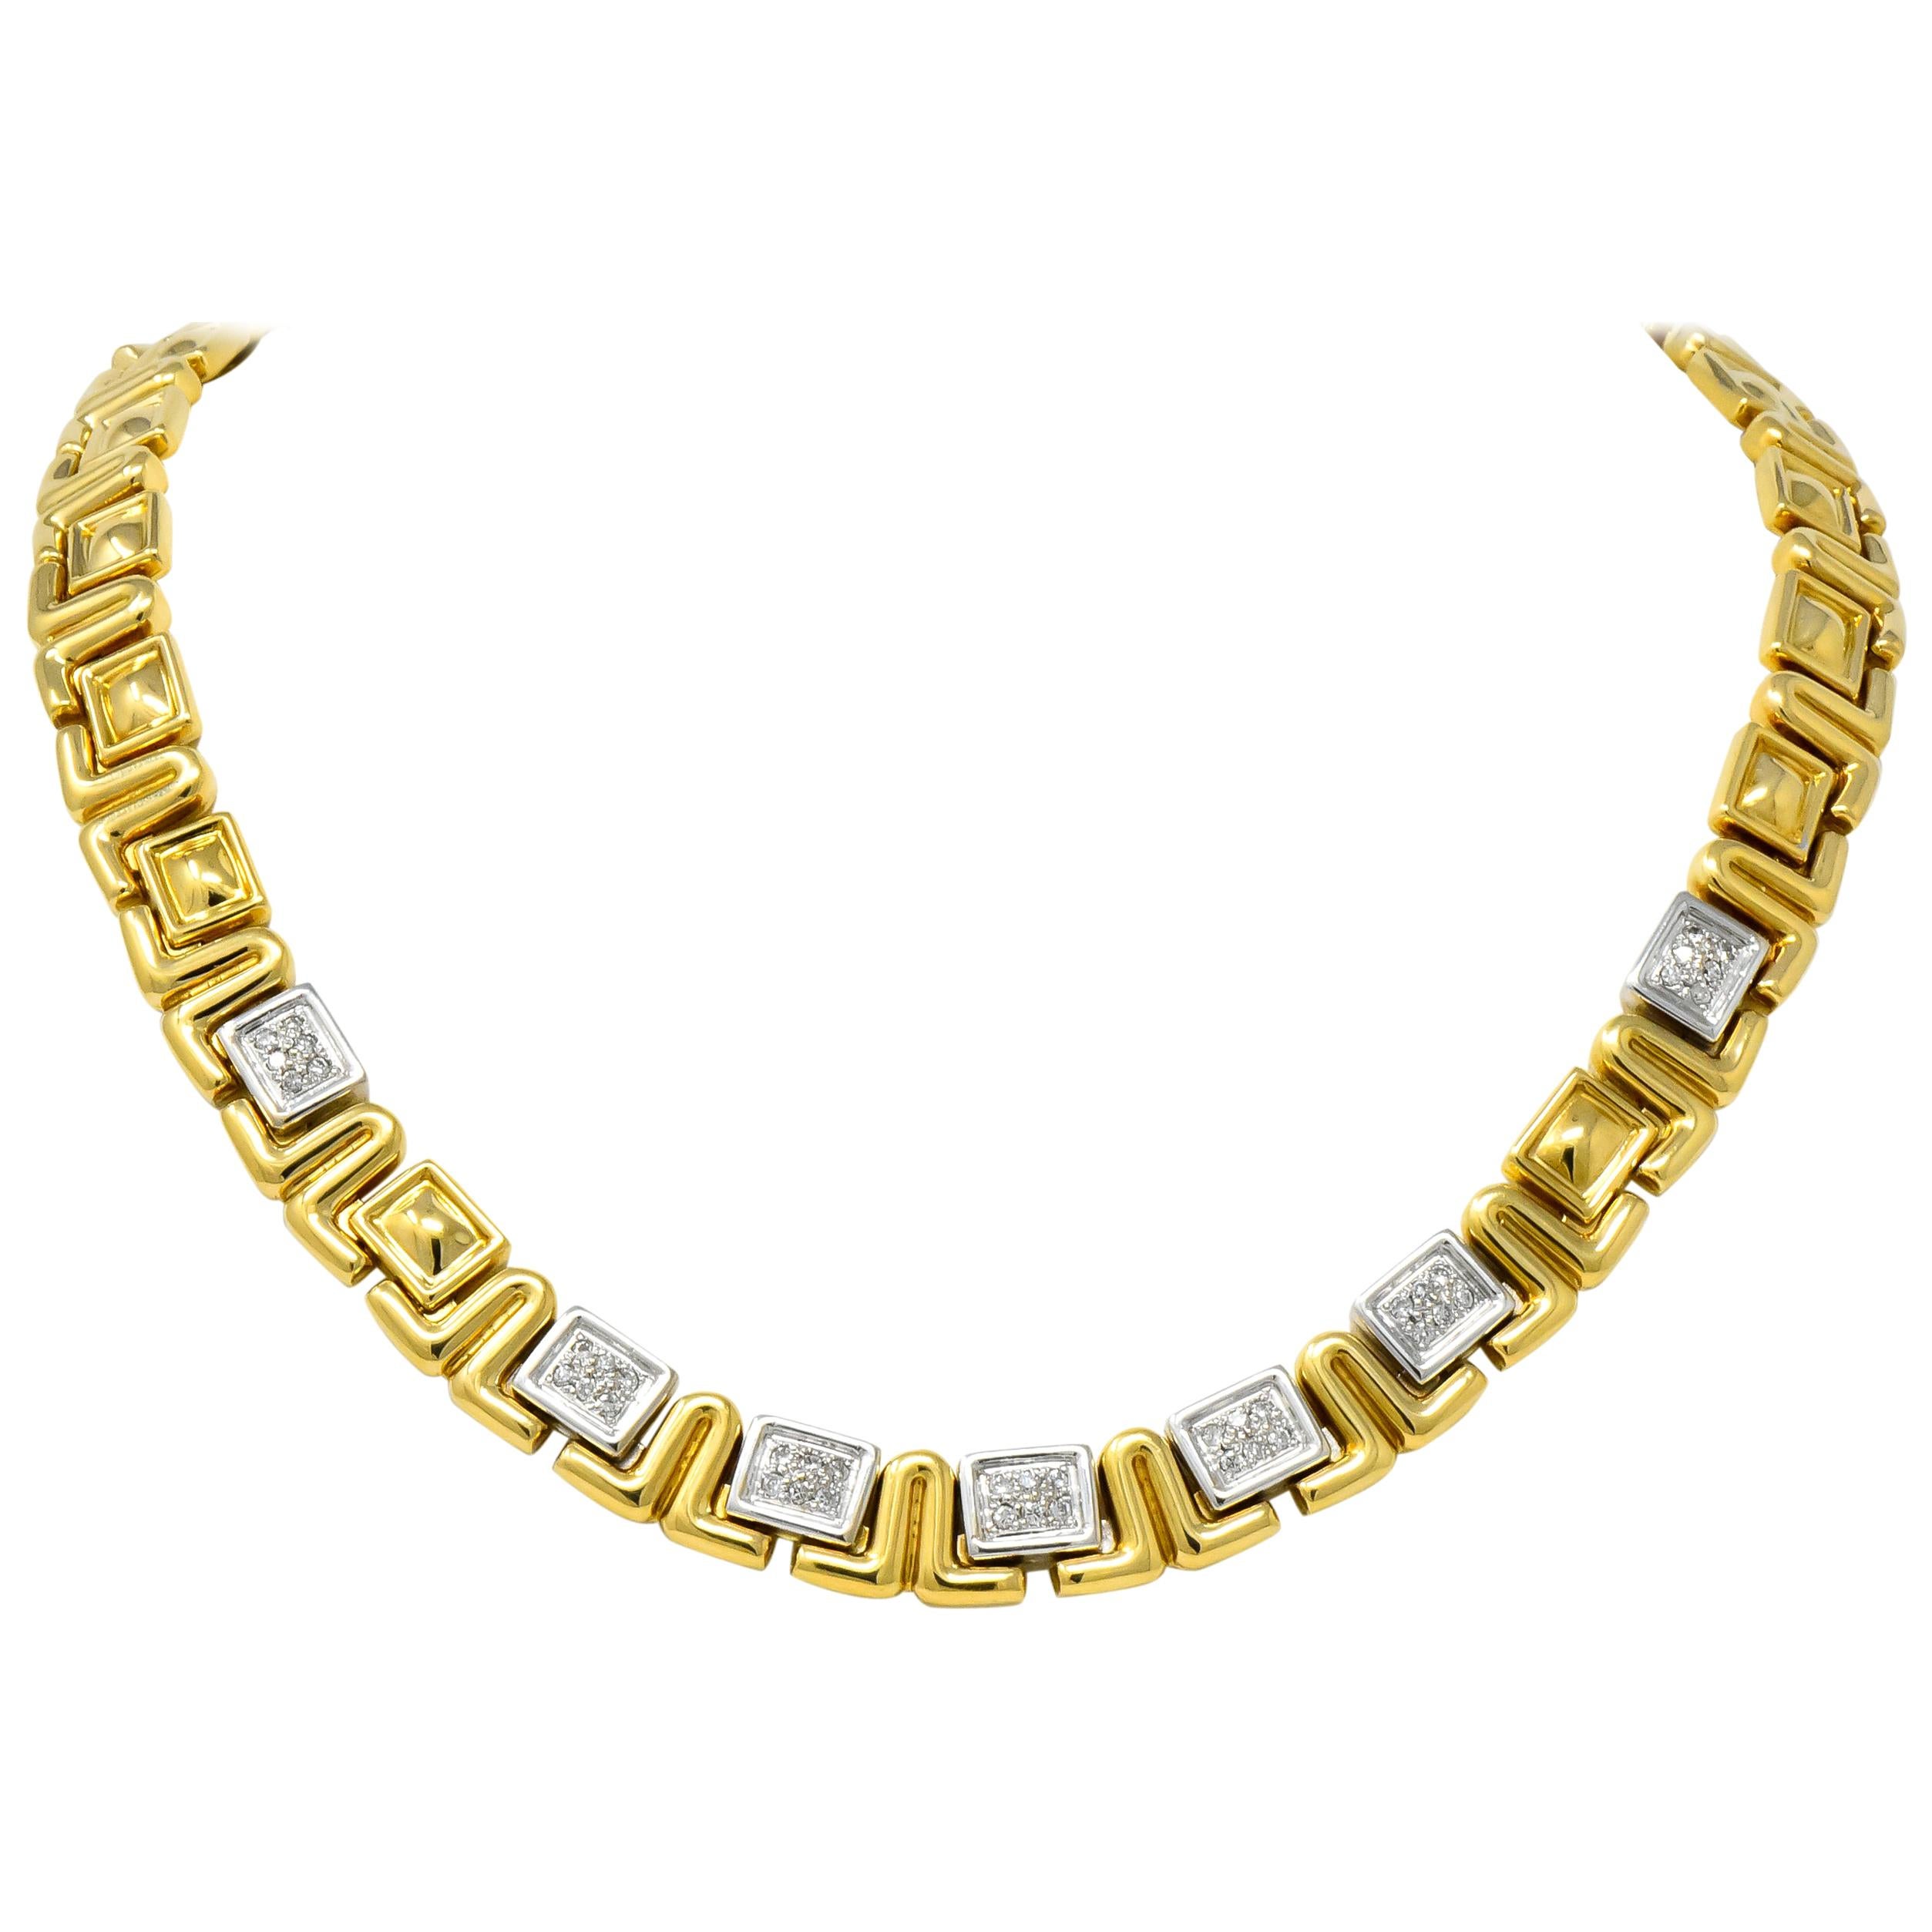 Chiampesan 0.85 Carat Diamond 18 Karat Two-Tone Gold Collar Necklace